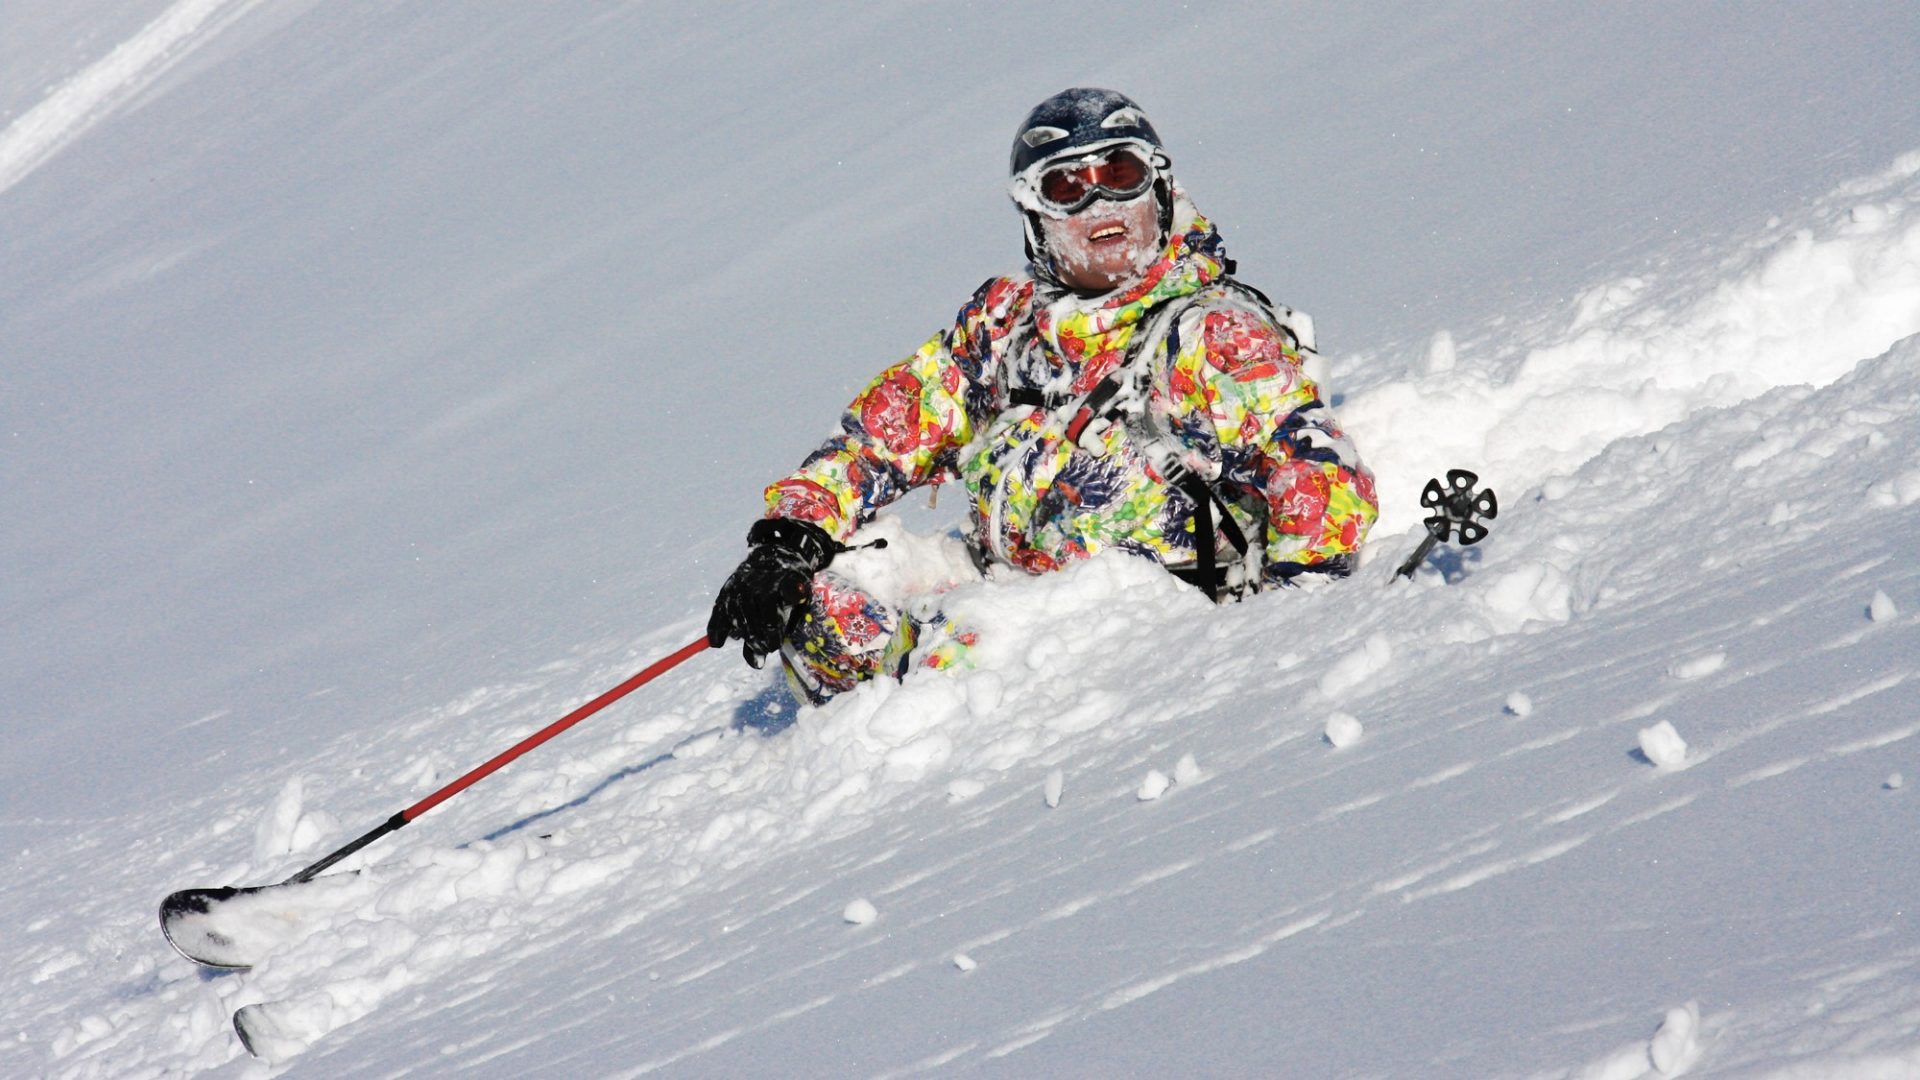 Beim Skifahren lassen sich durch wenige Vorkehrungen und richtiges Verhalten im Falle eines Sturzes viele schlimmere Verletzungen vermeiden.